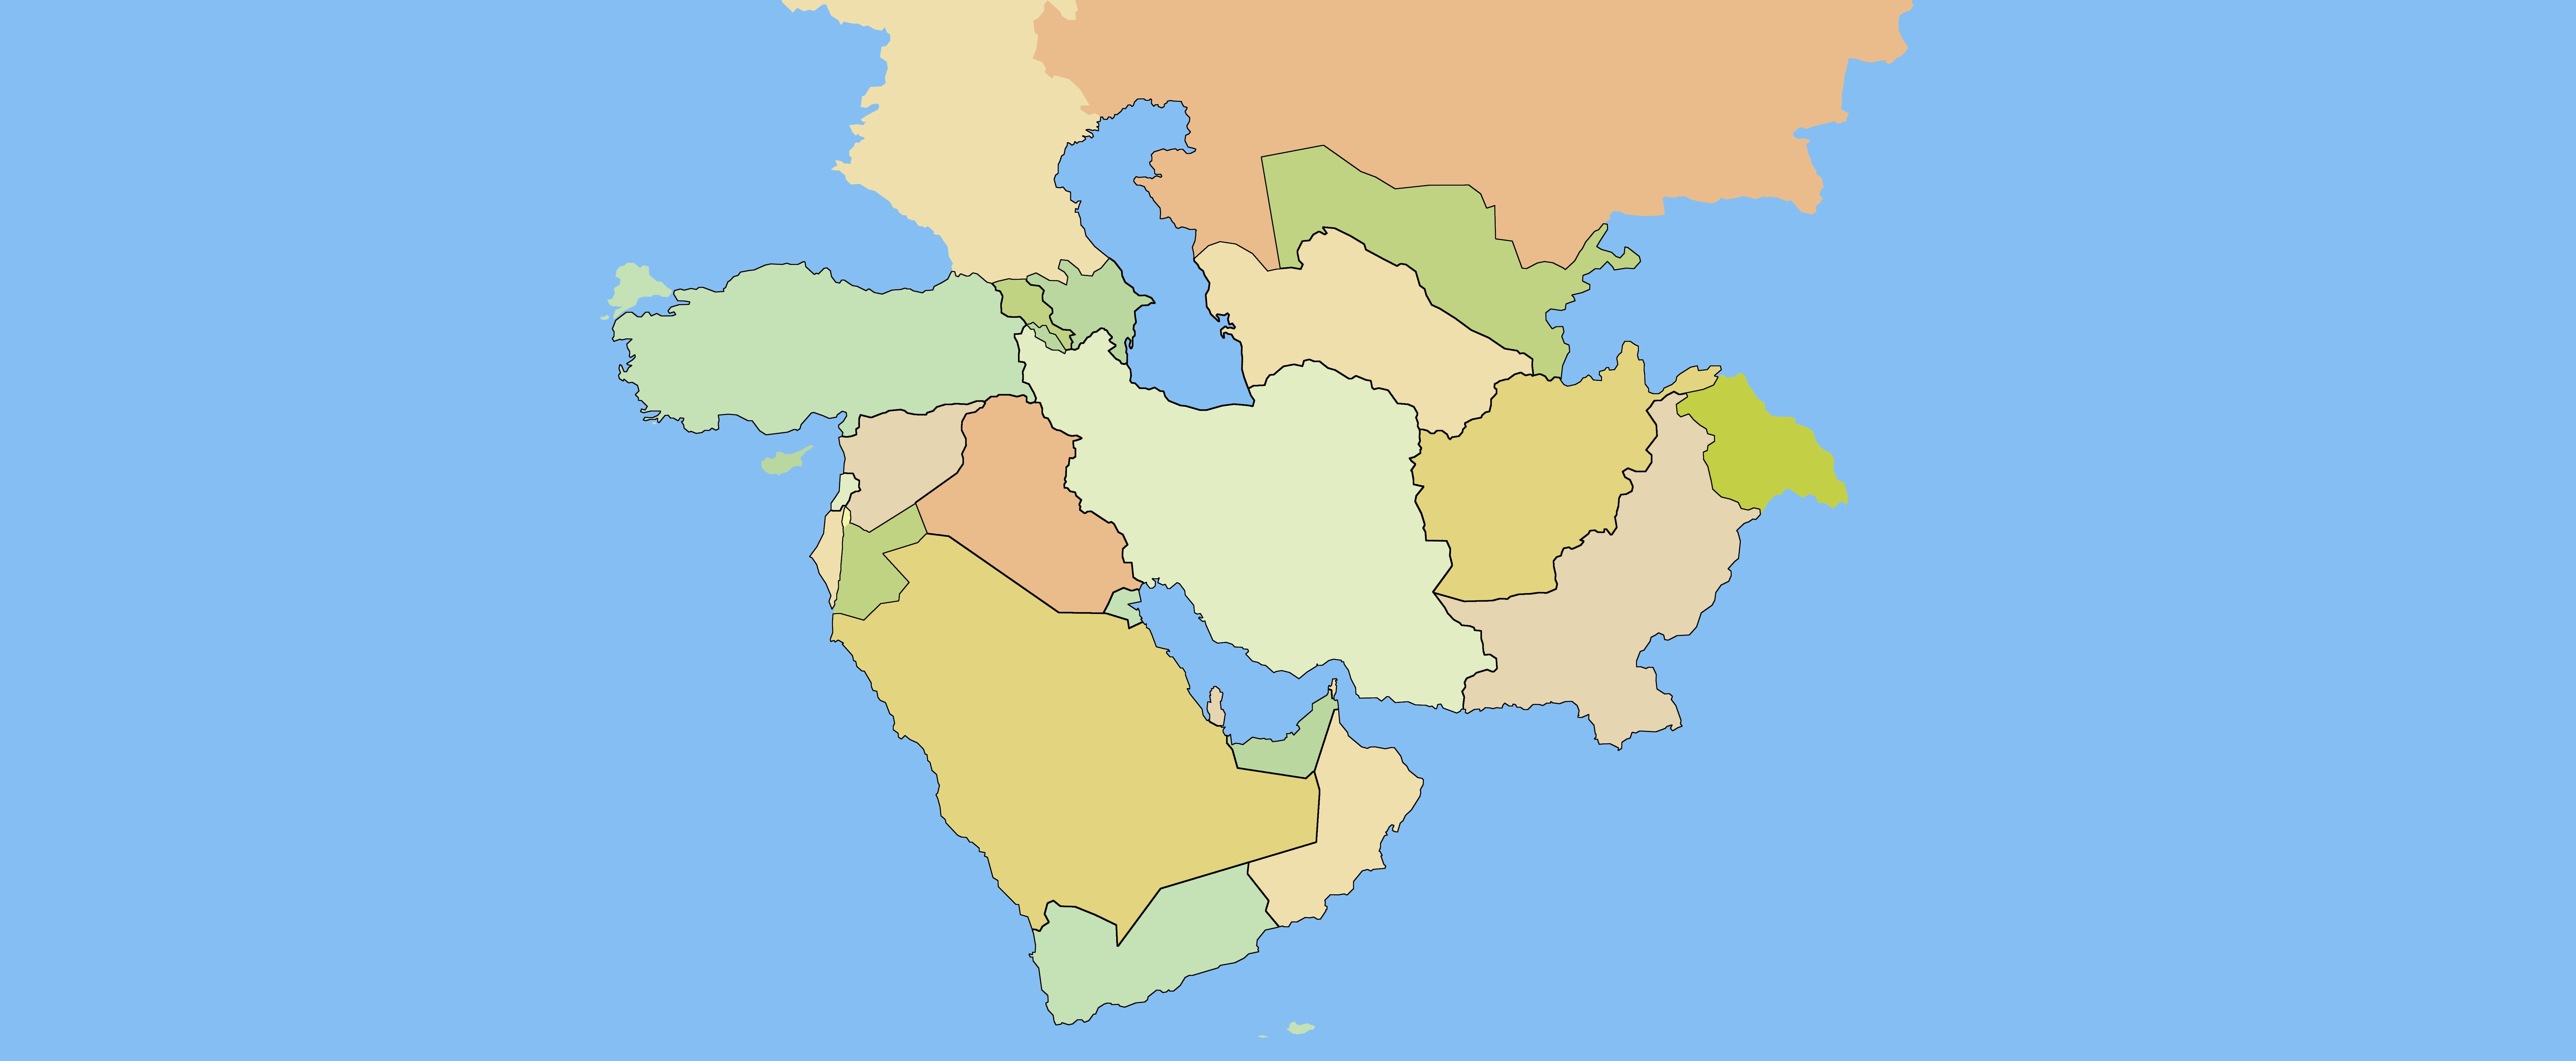 نقشه آسیای میانه